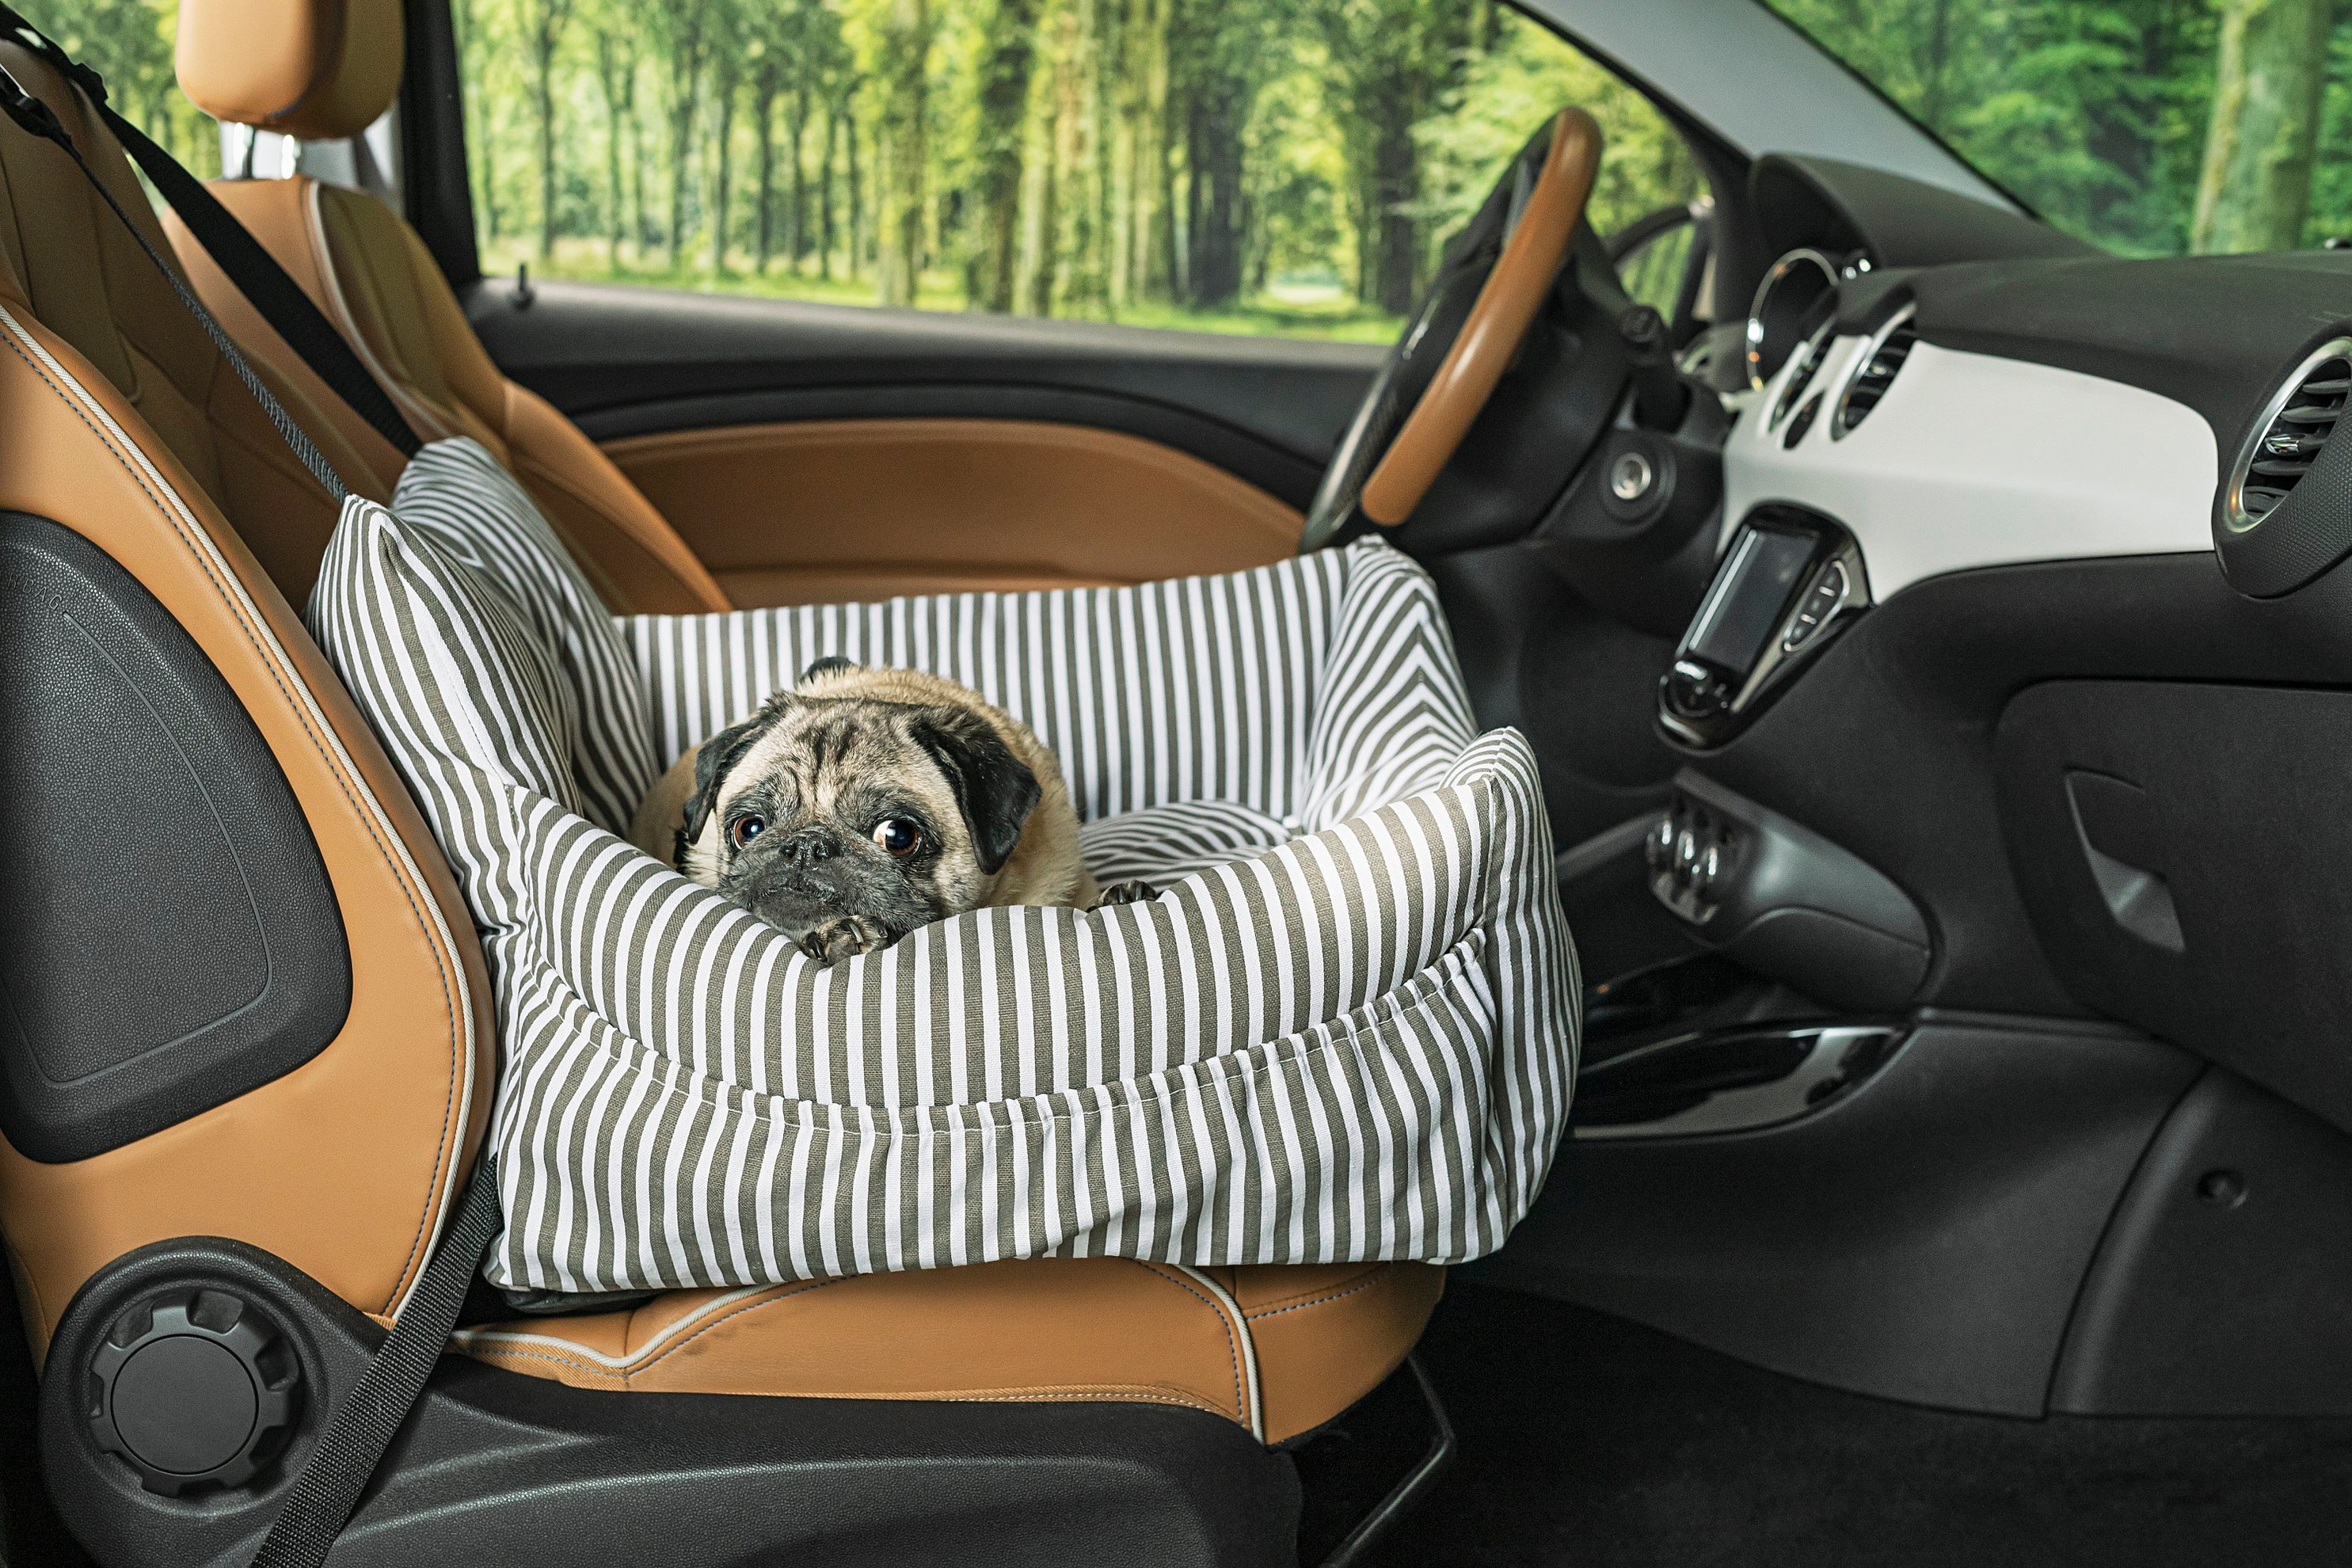 Hunde-Autositz Farbe: schwarz weiss gestreift